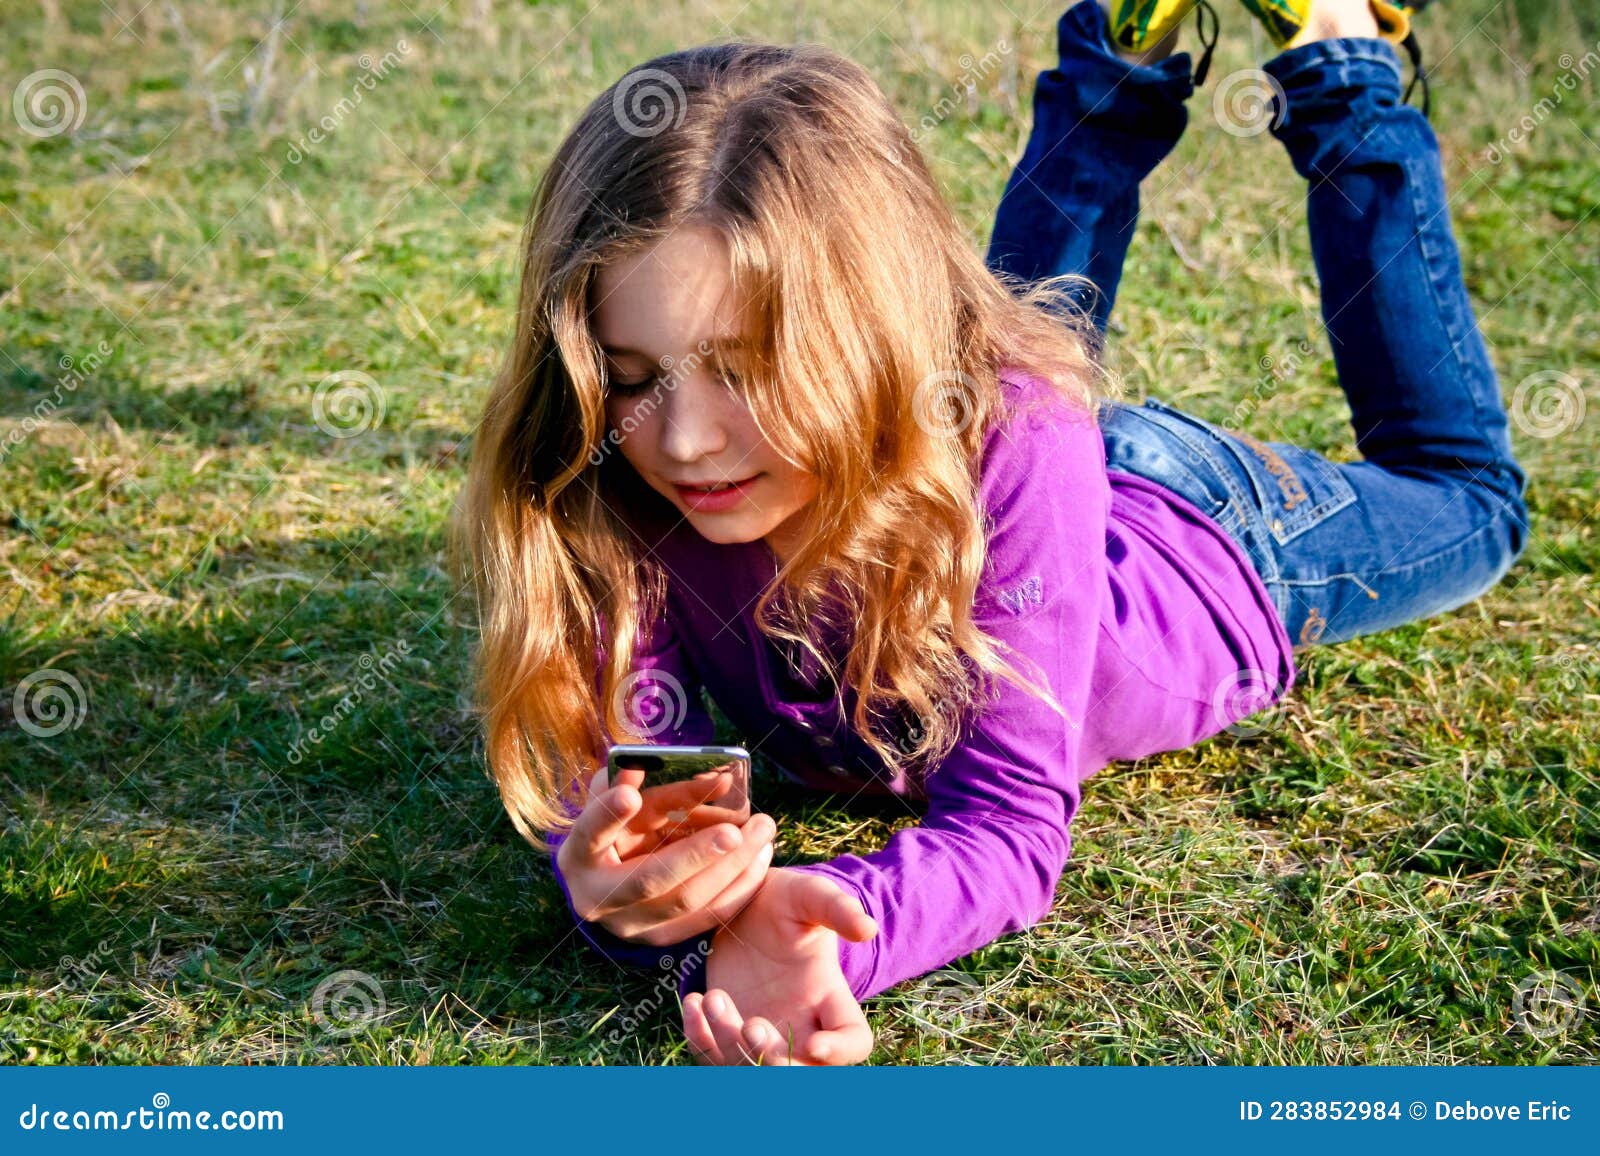 Belle Jeune Fille Utilisant Son Smartphone Pour Appeler Ou Envoyer Un Message Photo Stock